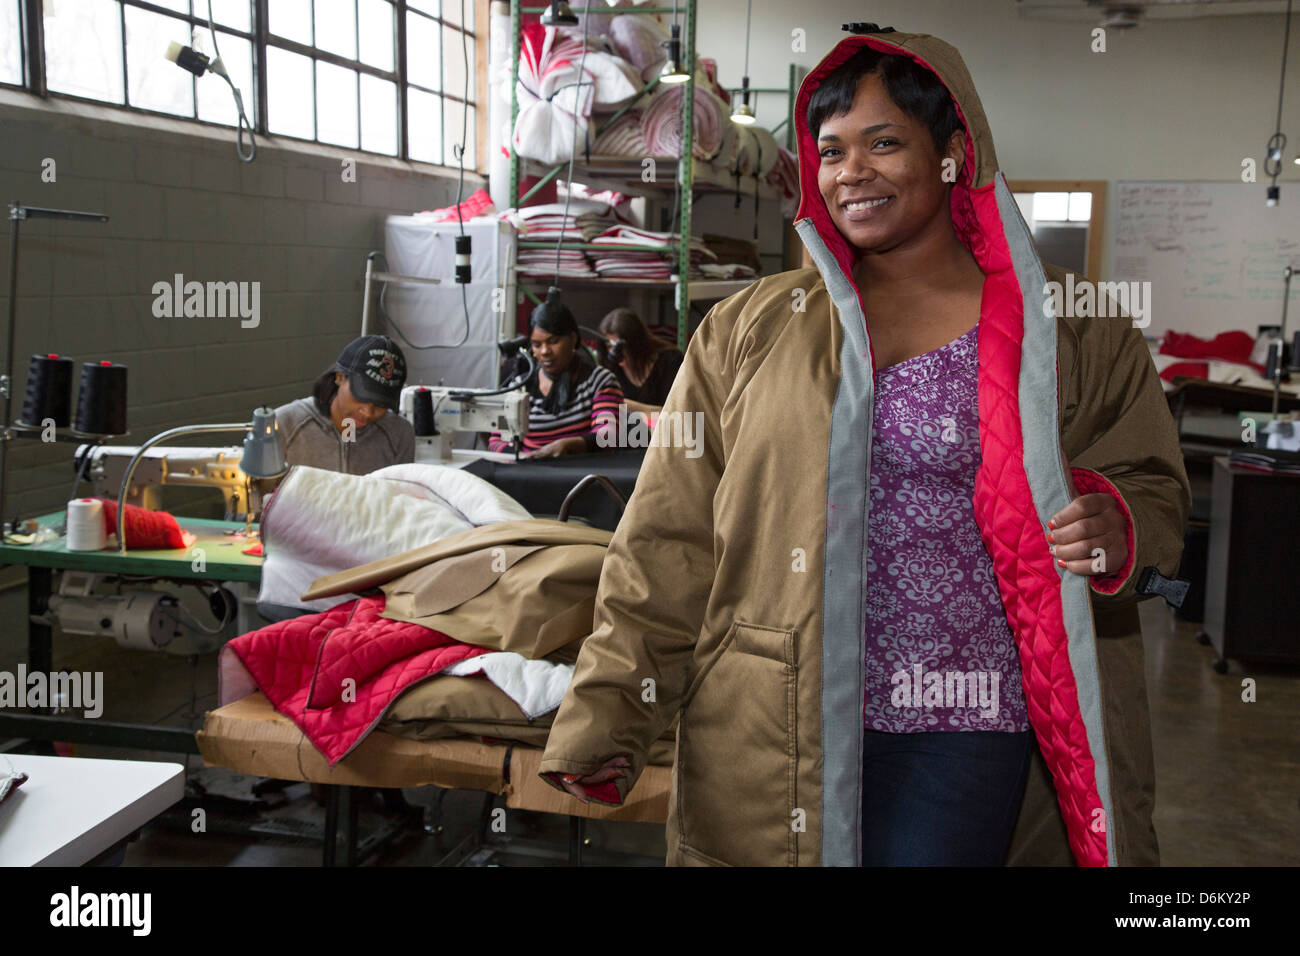 Un travailleur sur le plan de l'habilitation des organismes sans but lucratif un manteau dont les modèles anciens sans-abri, les femmes font pour les sans-abri. Banque D'Images